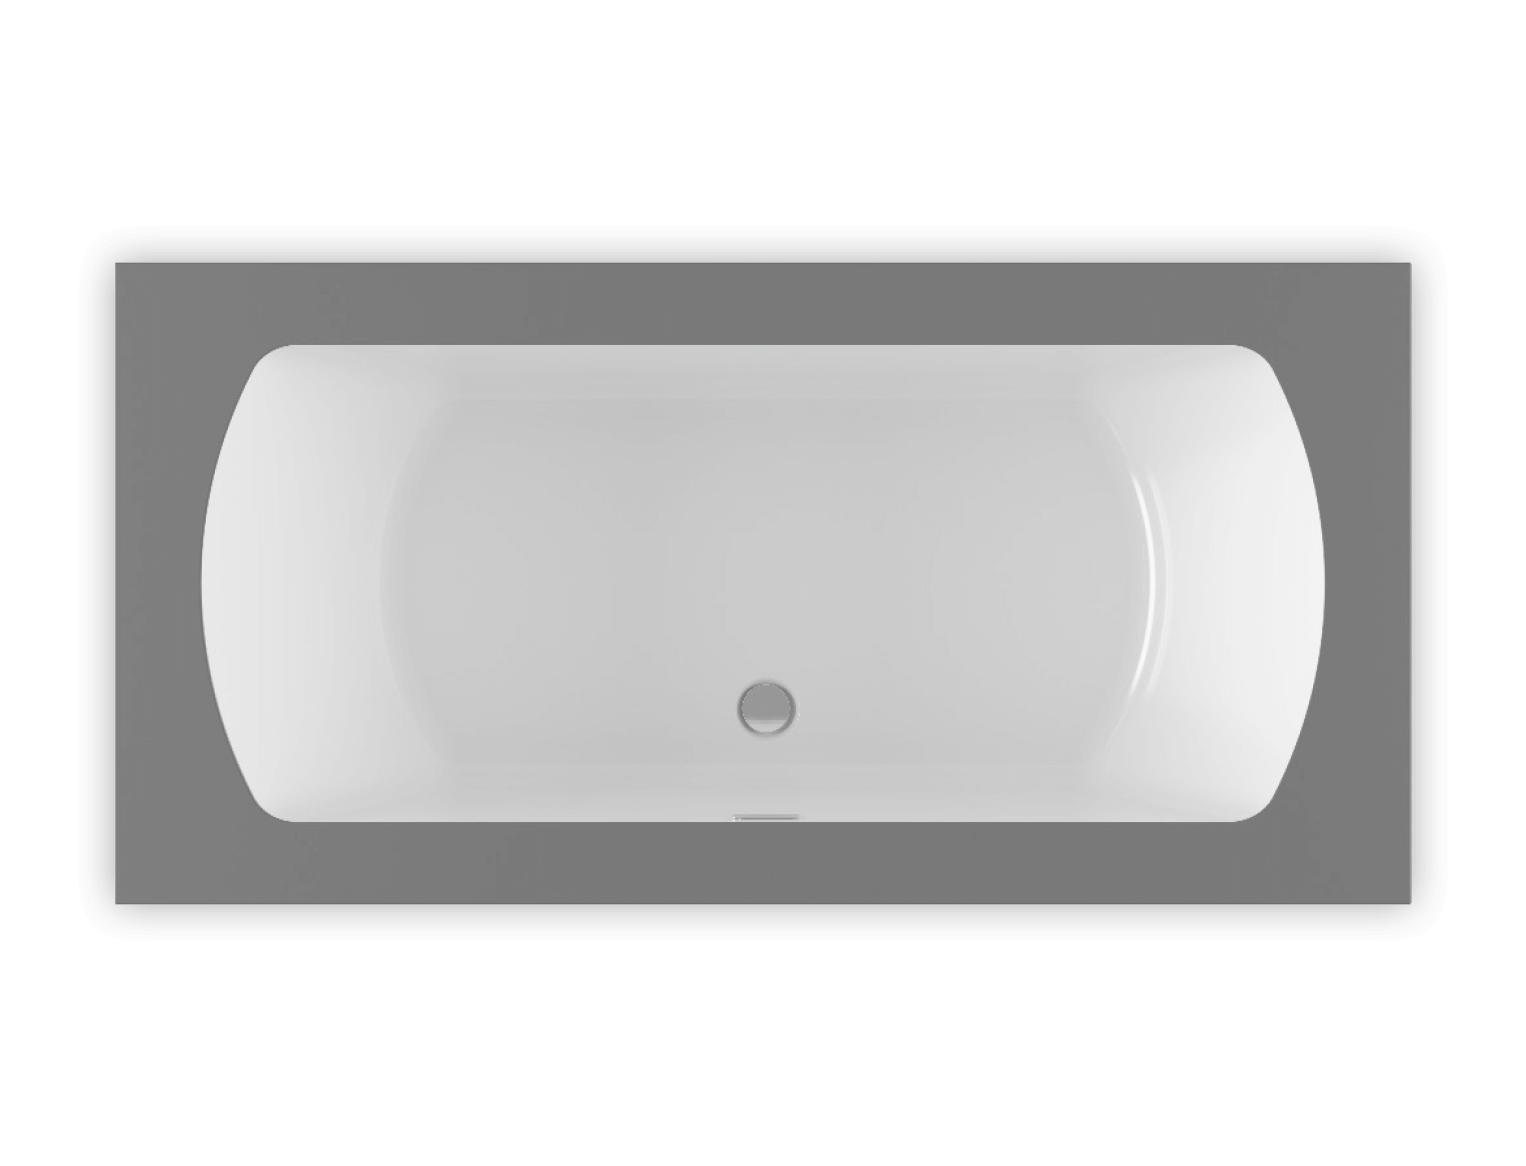 Monarch 6636 air jet bathtub for your modern bathroom